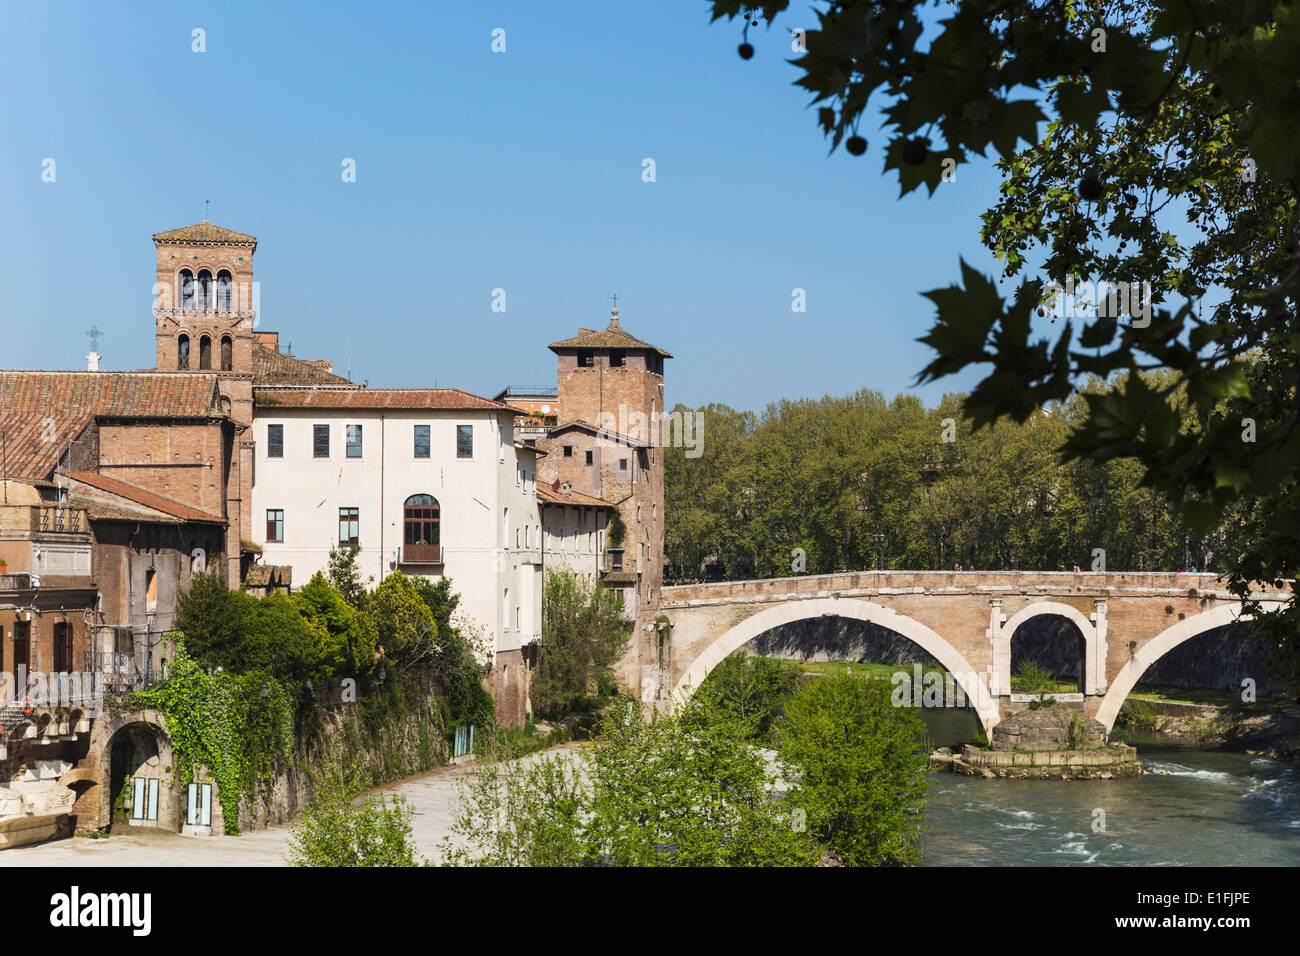 Roma, Italia. Isola Tiberina o isola Tiberina con il Ponte Fabricio costruito nel I secolo A.C. Foto Stock